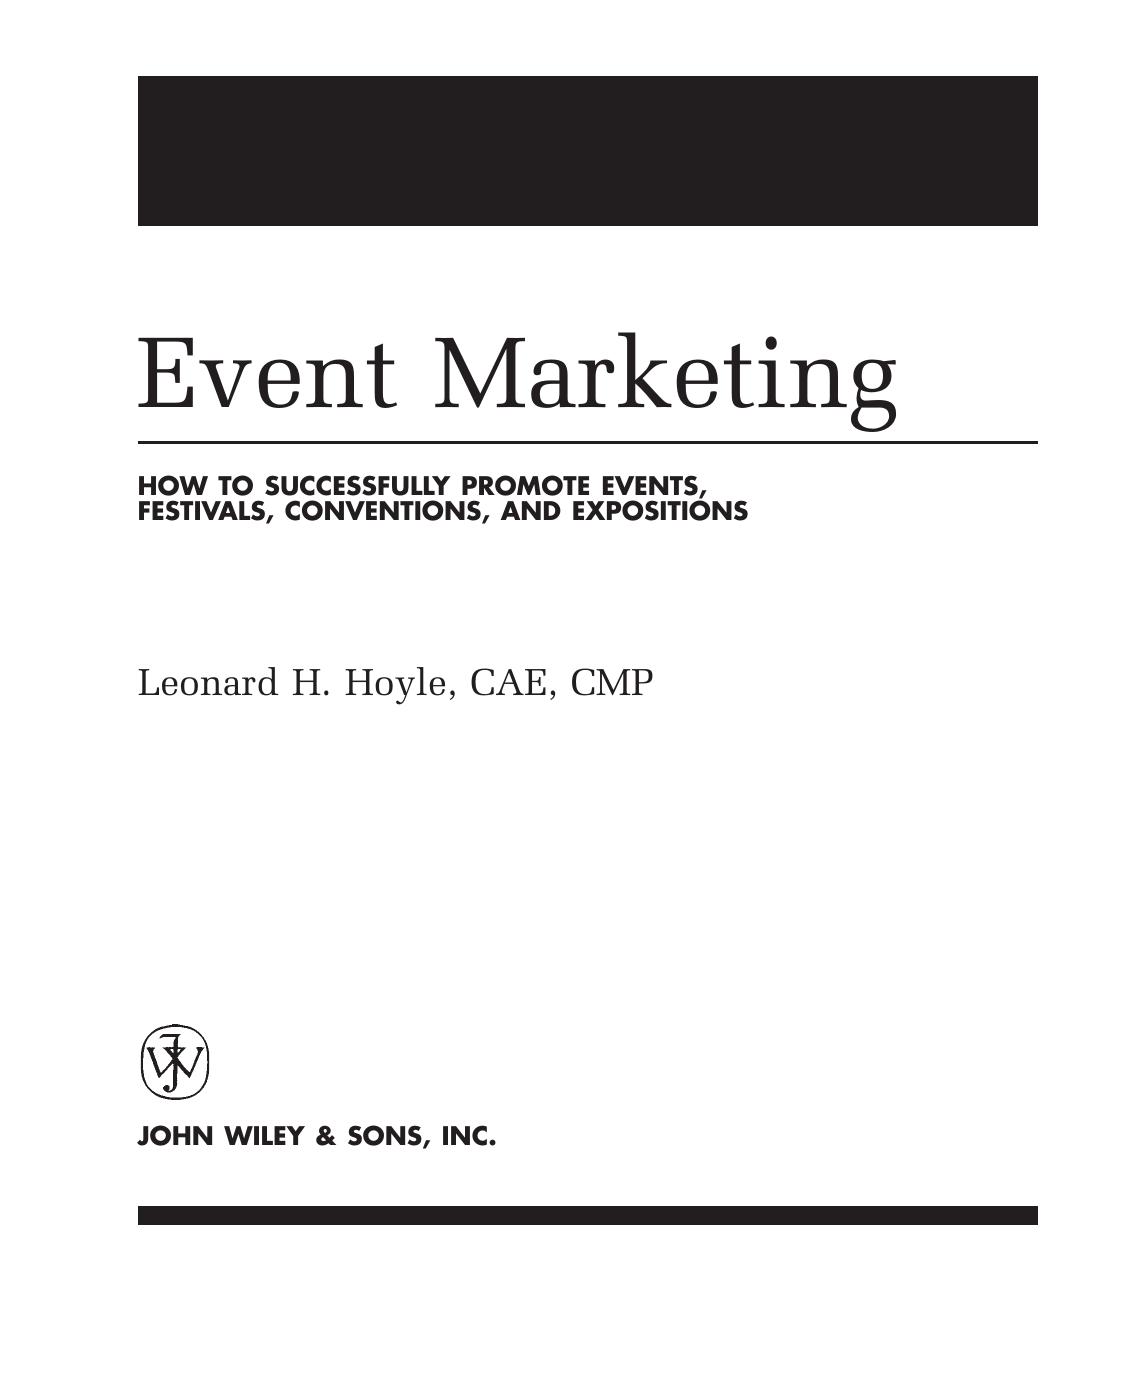 [Leonard H. Hoyle] Event Marketing How to Success 2002